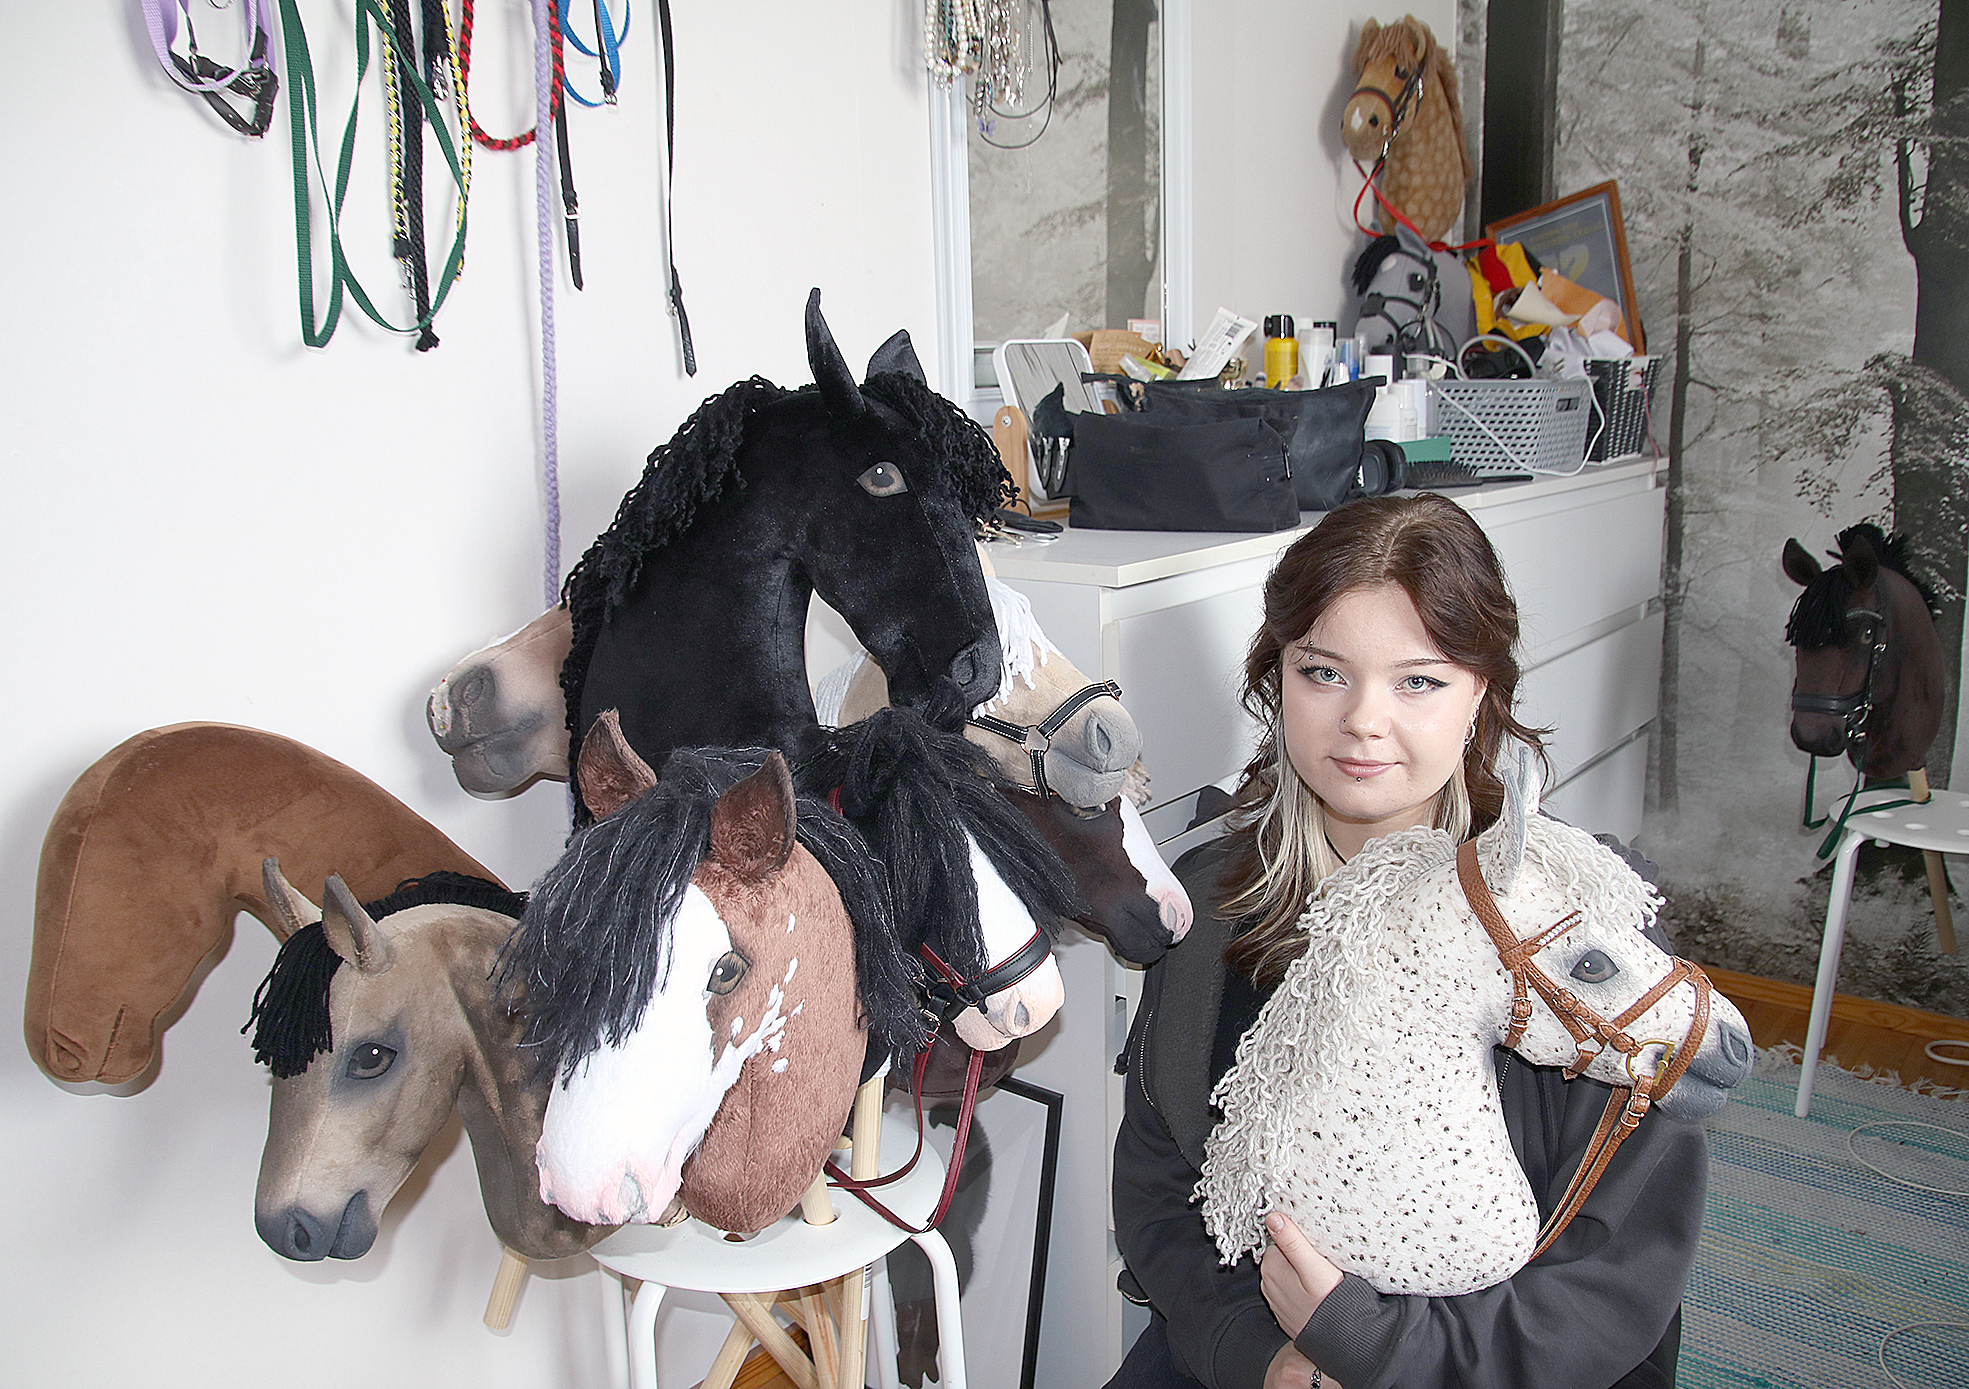 Elina Tuononen toivoo voivansa valmistaa keppihevosia myös tulevaisuudessa, jatko-opintojen ohessa.